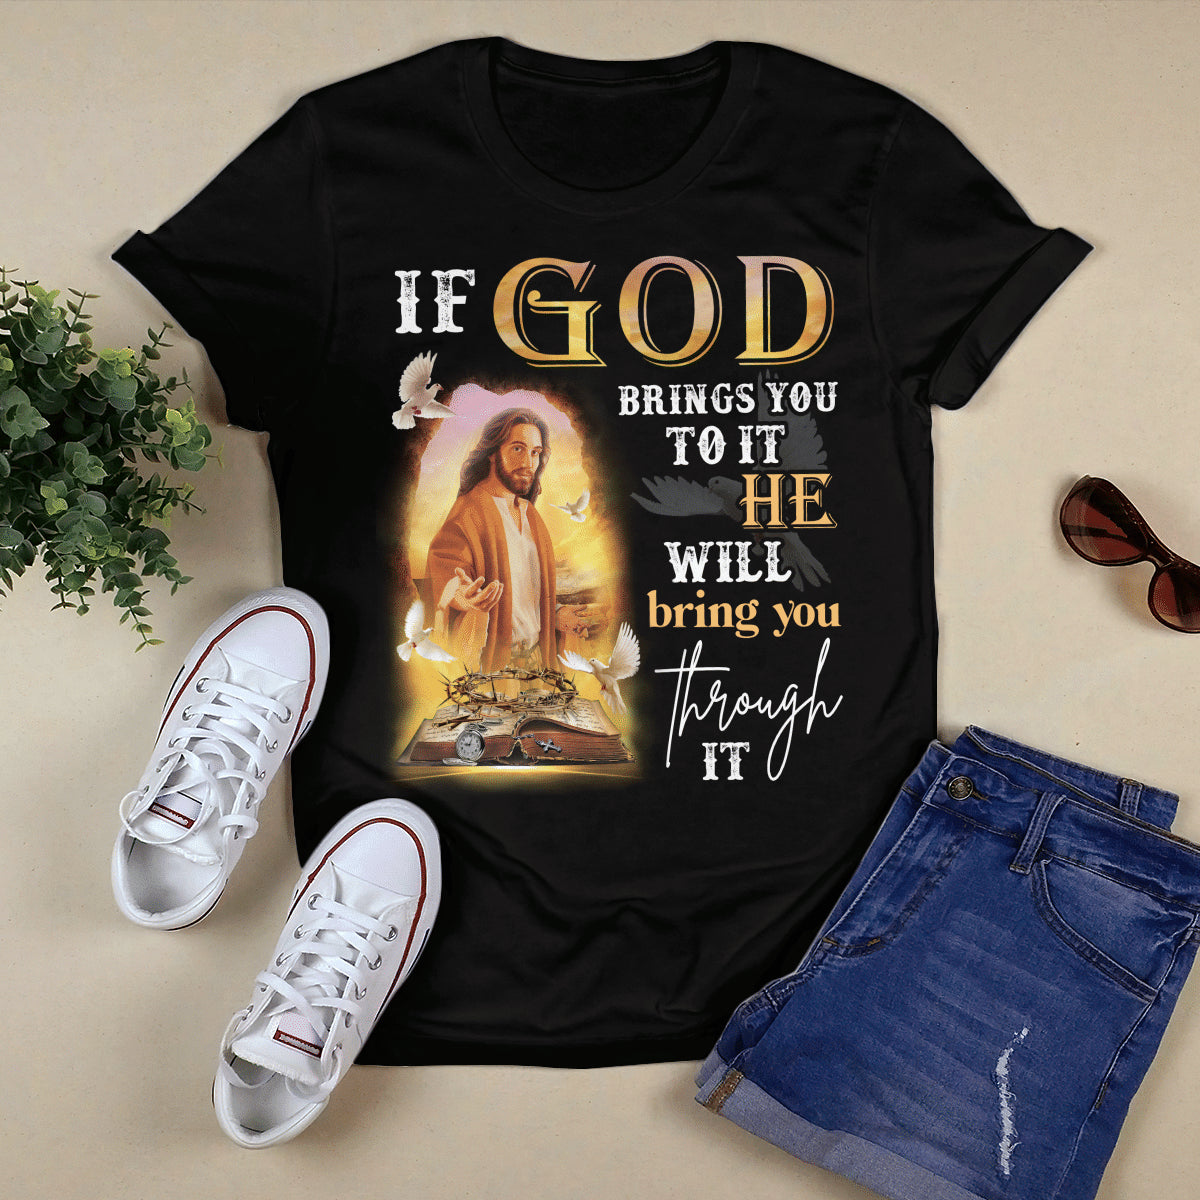 If God Brings You To It He Will Brings You Through It T- Shirt - Jesus T-Shirt - Christian Shirts For Men & Women - Ciaocustom